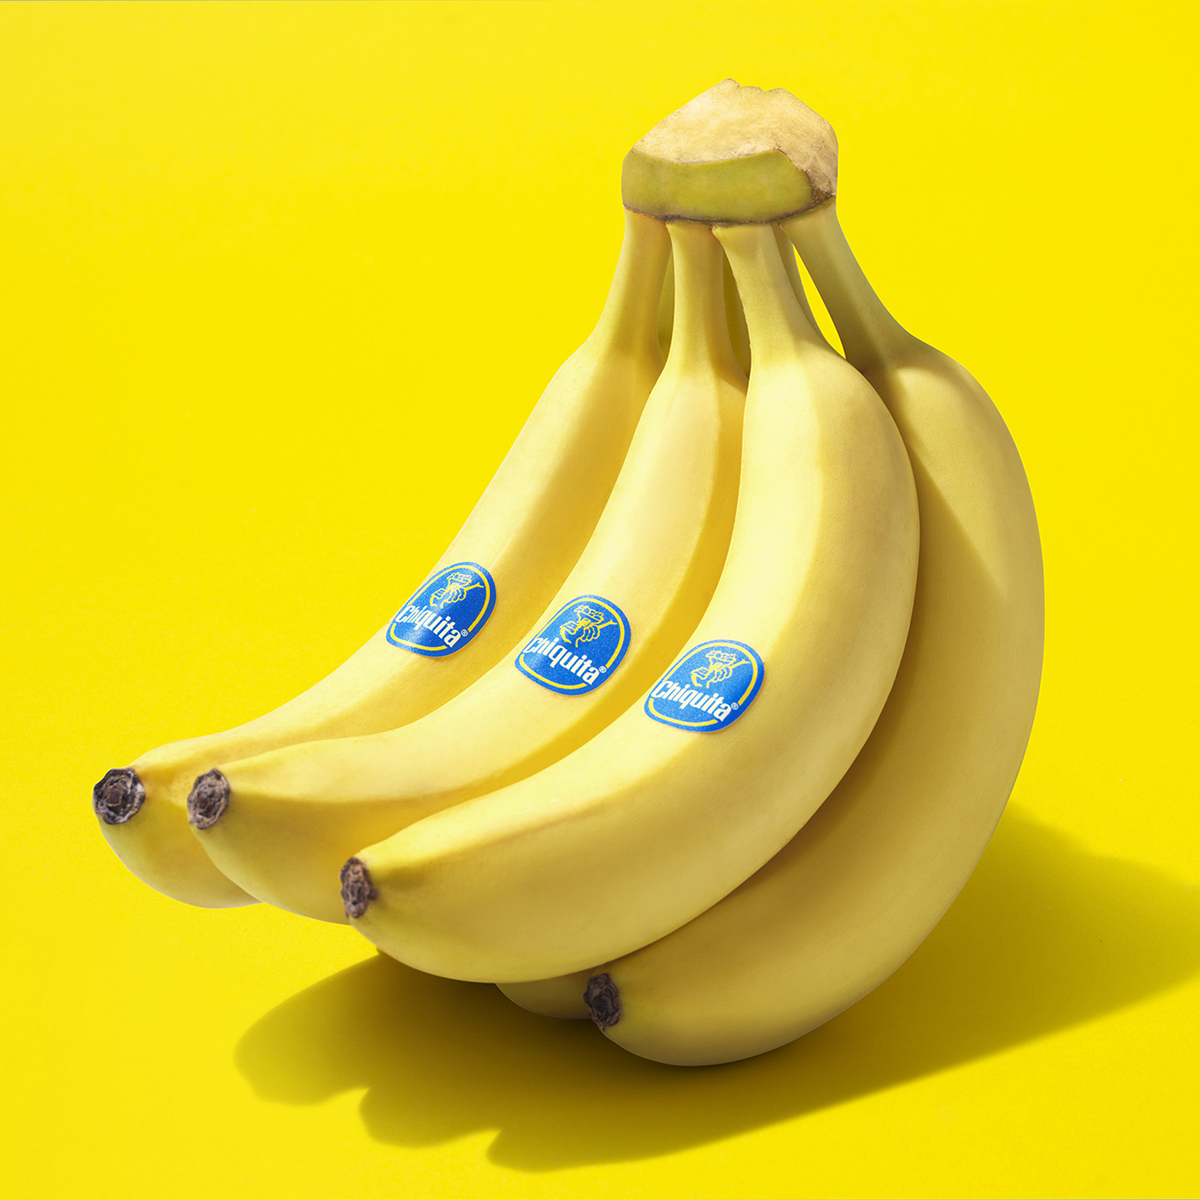 https://www.chiquita.com/wp-content/uploads/2019/12/Chiquita_Banana_Class_Extra_Yellow.jpg